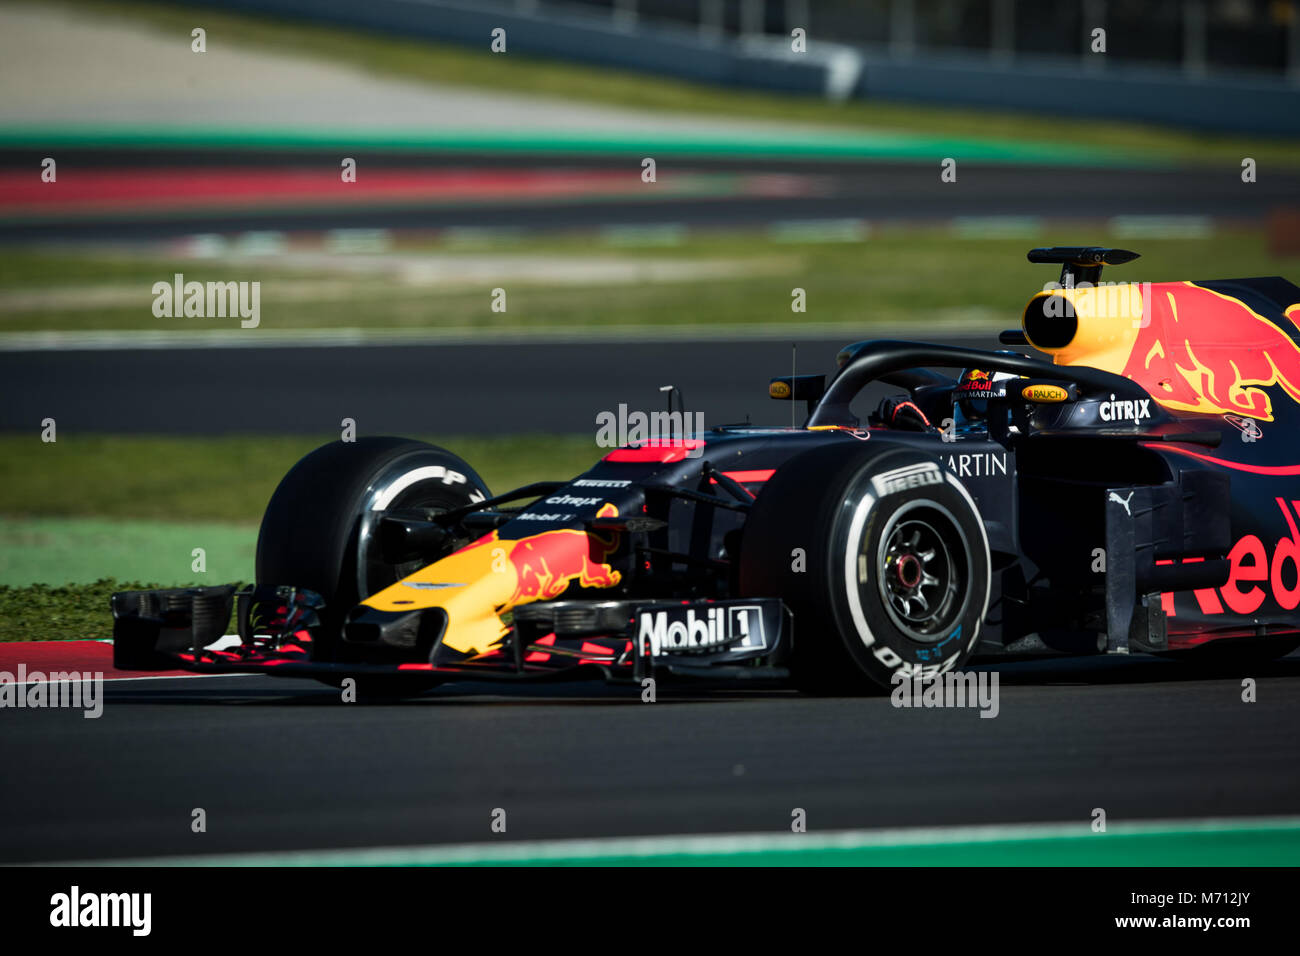 Montmelo, Catalogna, Spagna. 7 Mar, 2018. Daniel Ricciardo della RedBull Racing team con Red Bull RB14 vettura durante i test F1 giorni nel circuito di Montmelò. Credito:  MA 6340.jpg/SOPA Immagini/ZUMA filo/Alamy Live News Foto Stock